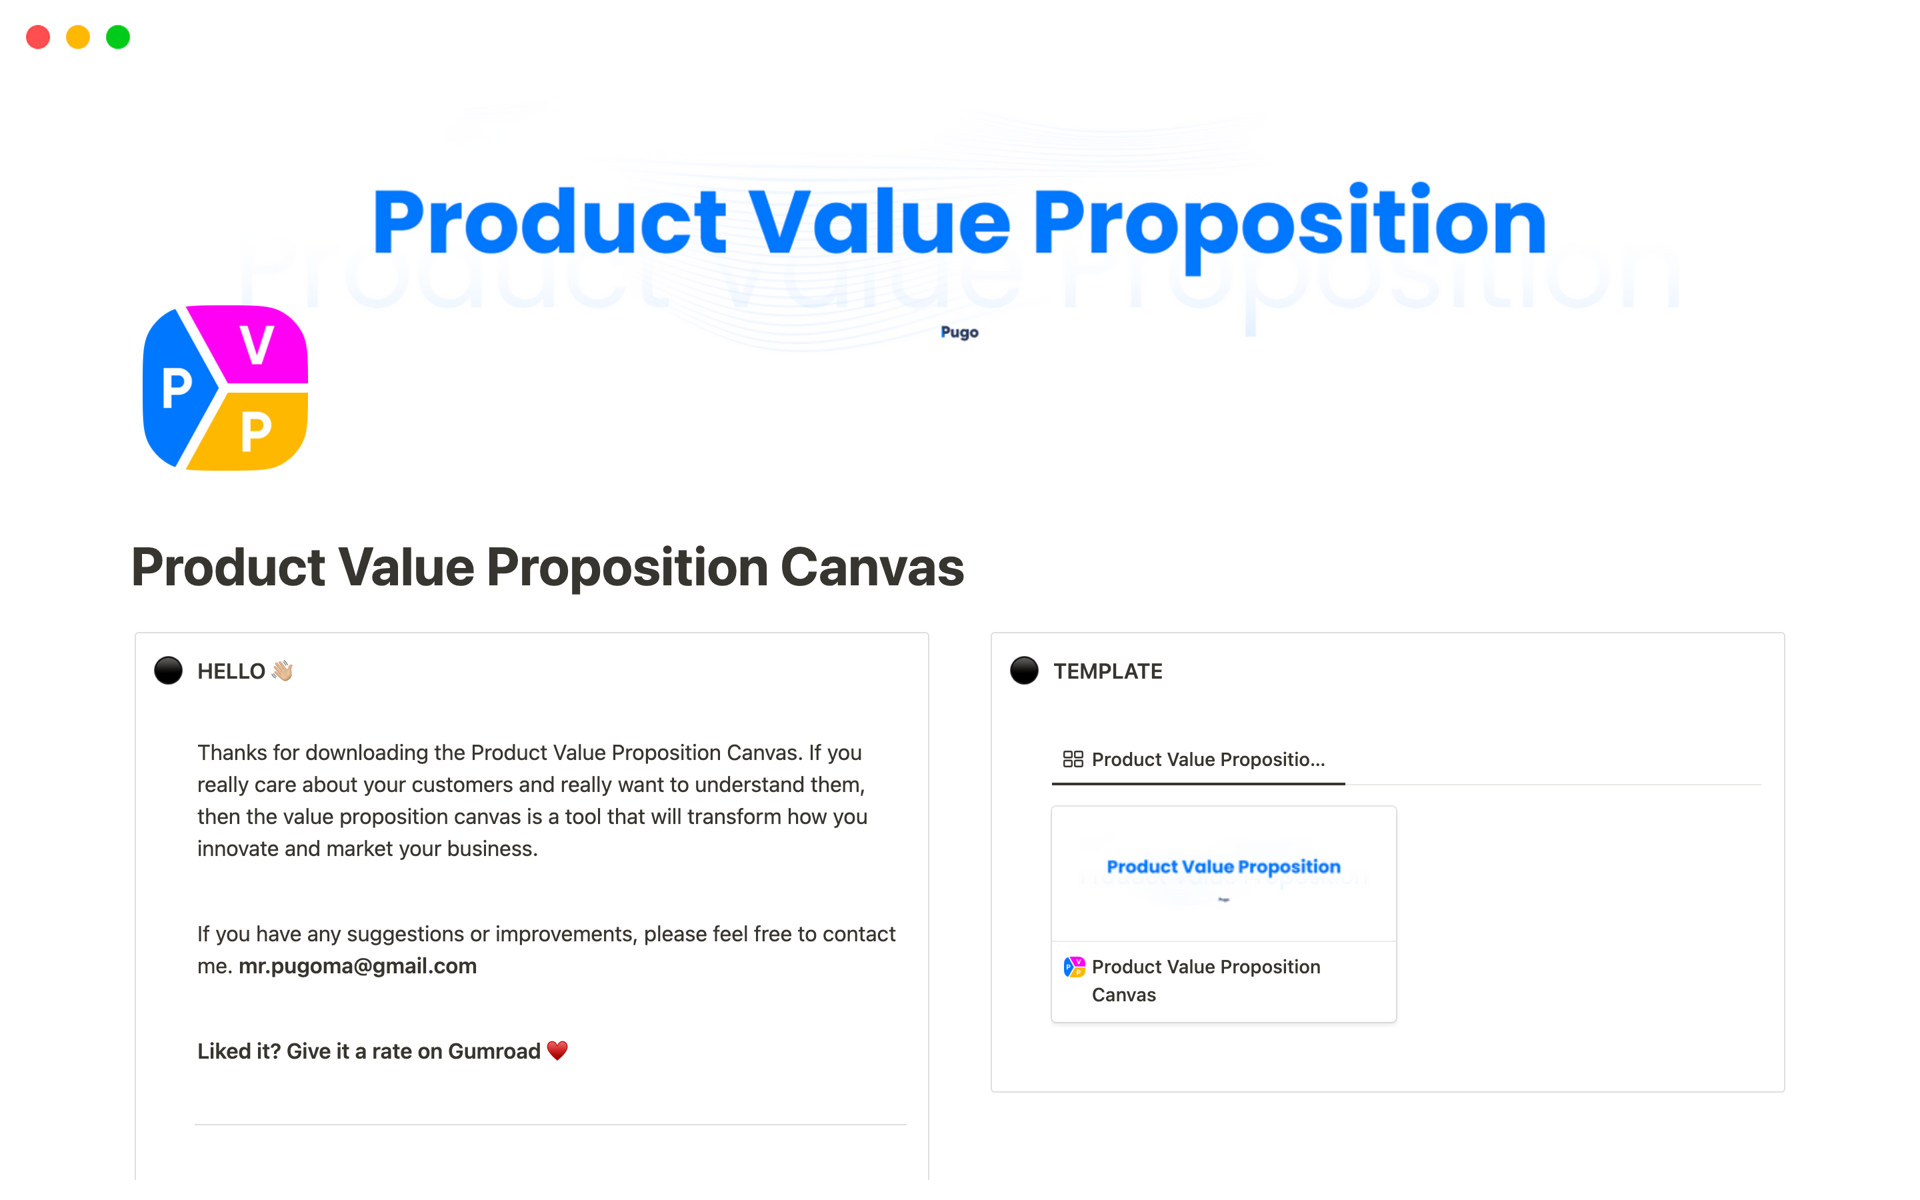 Uma prévia do modelo para Product Value Proposition Canvas